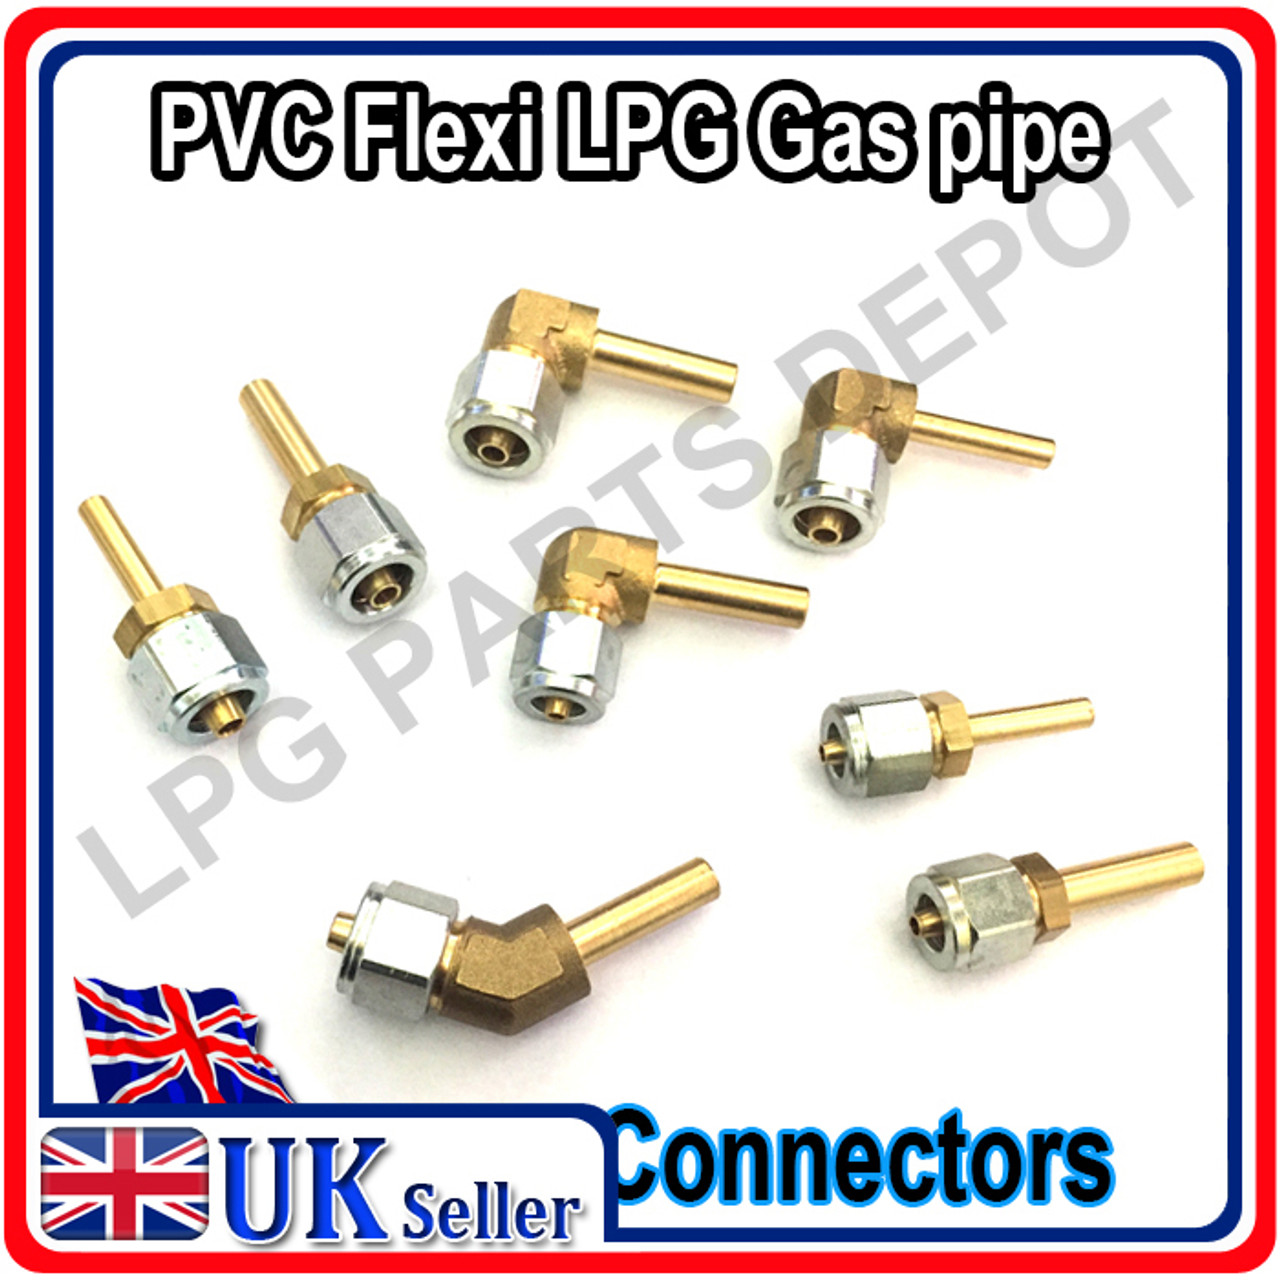 PVC gas pipe connectors